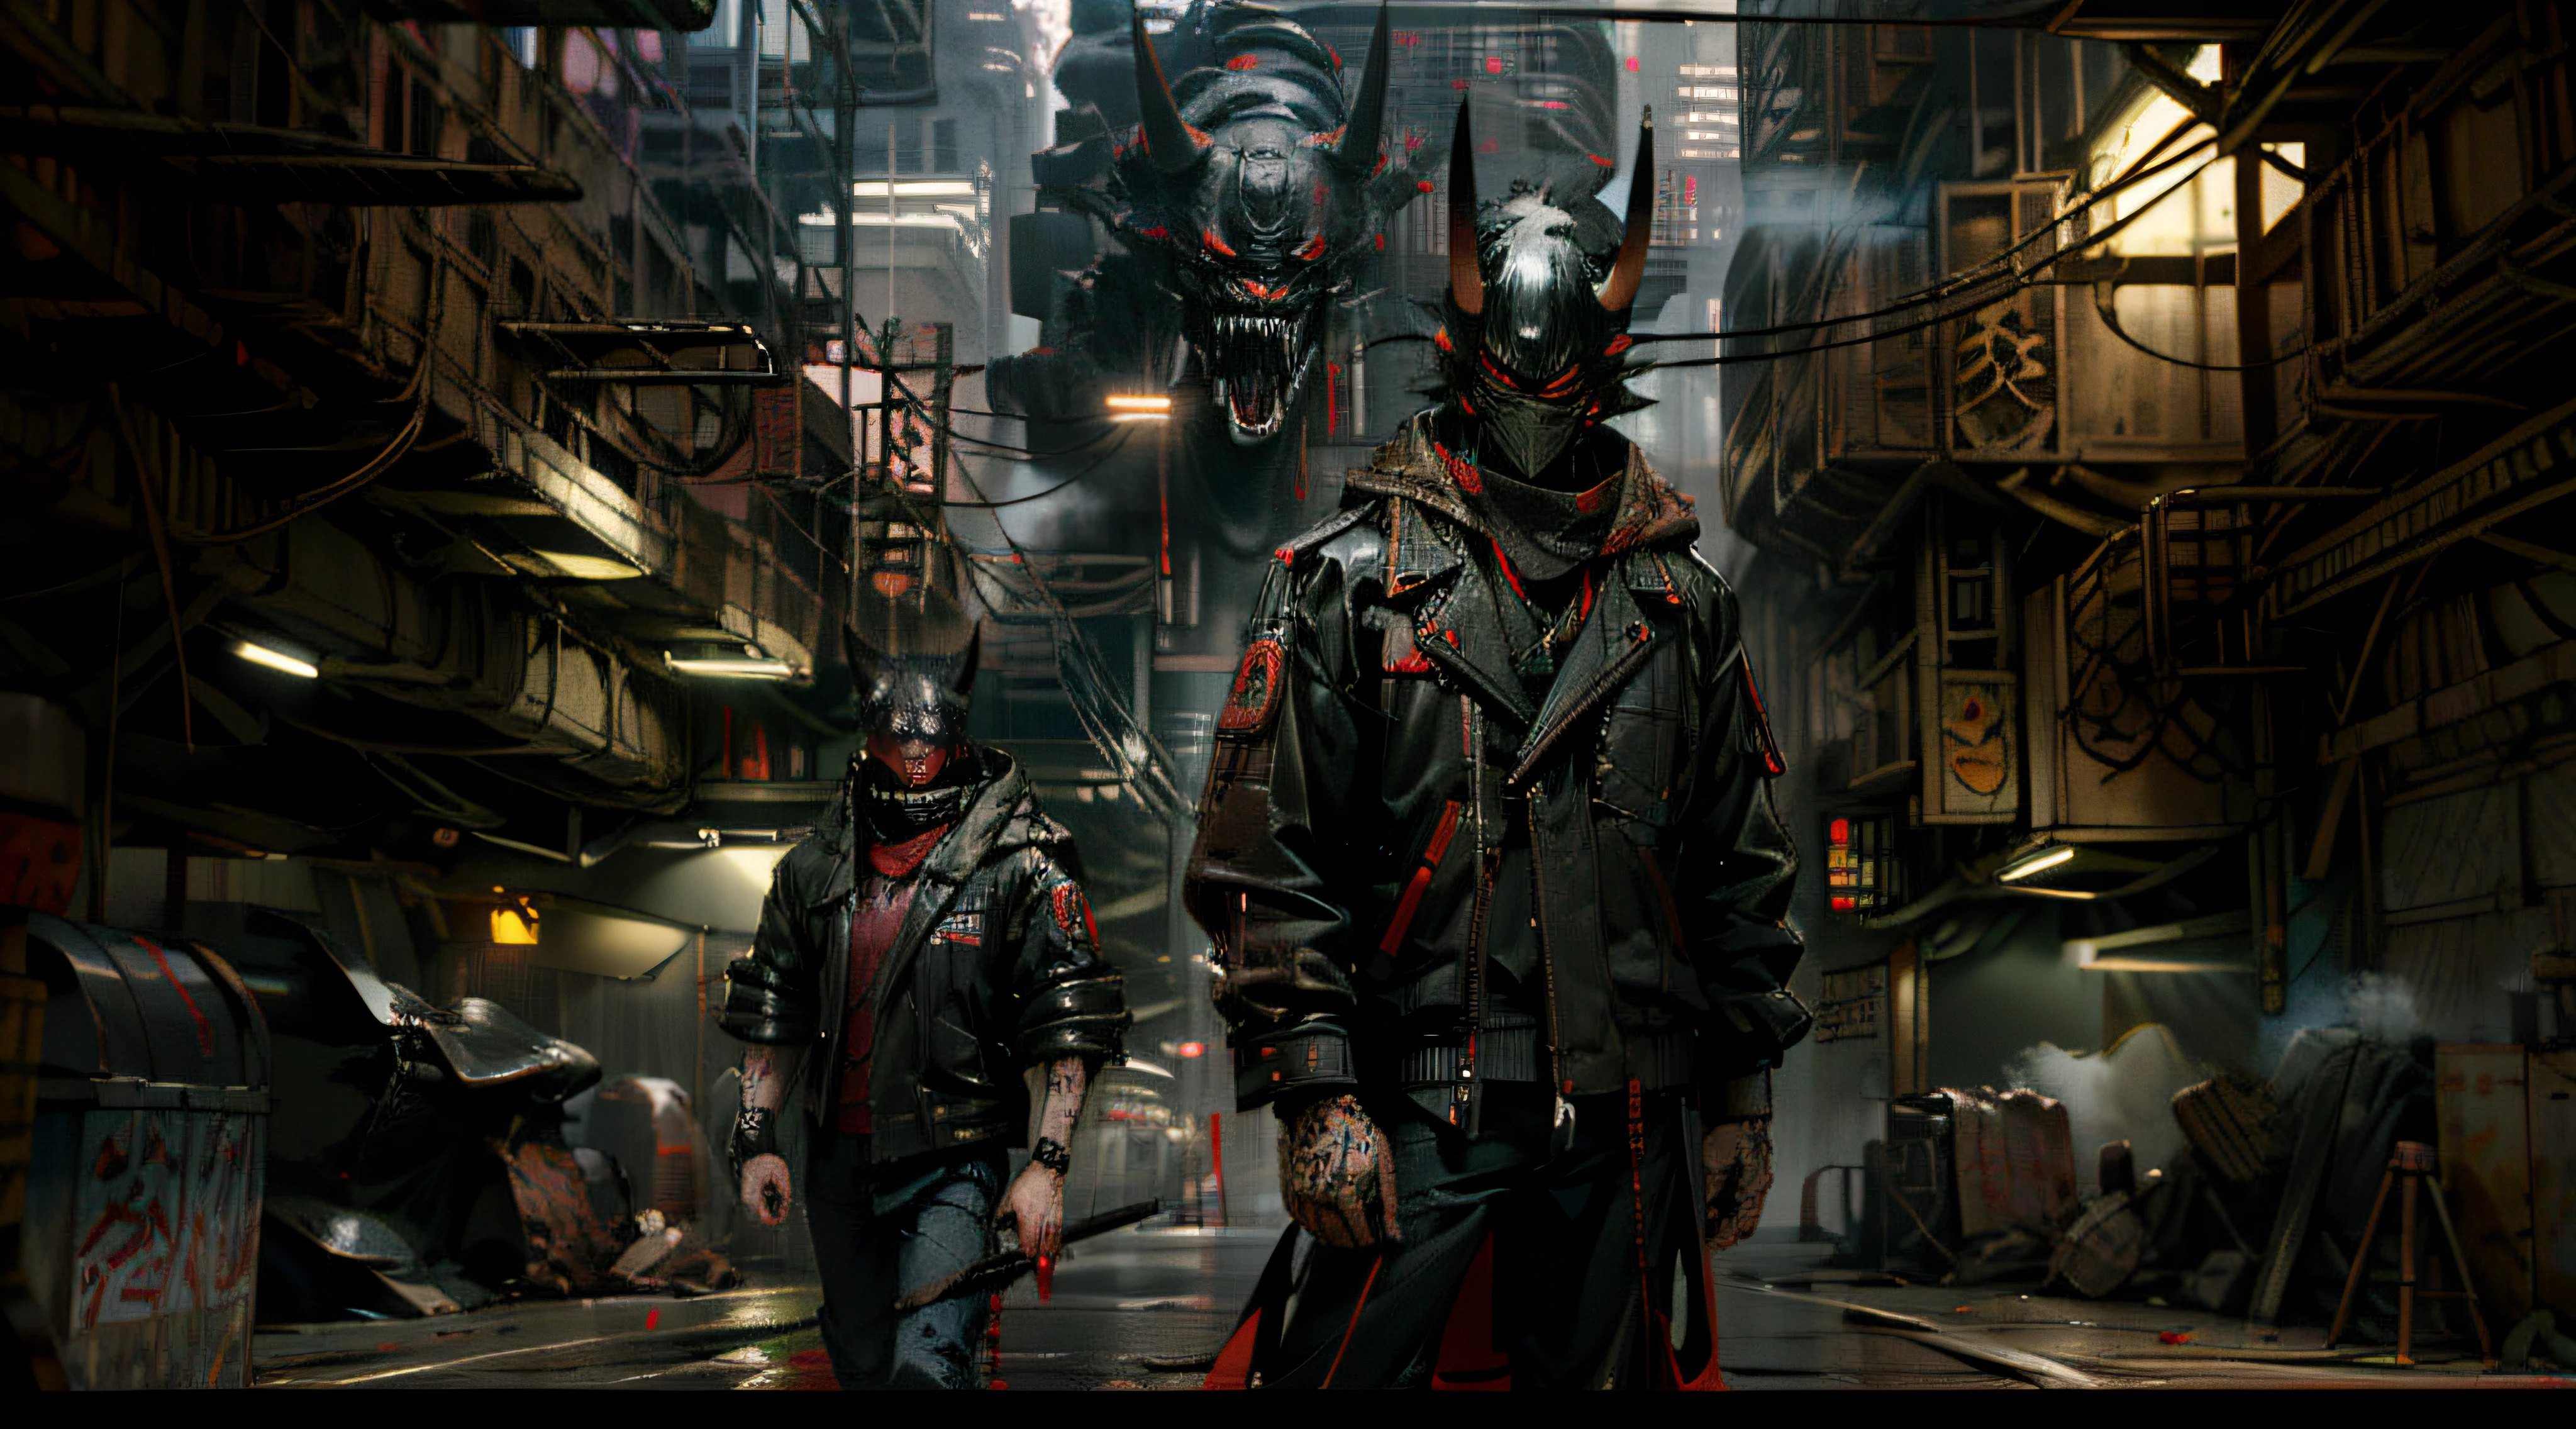 close-up: Uma figura misteriosa em uma longa jaqueta preta, usando uma máscara oni e segurando um vape, fica em uma rua nebulosa da cidade cyberpunk, exalando uma atmosfera corajosa.